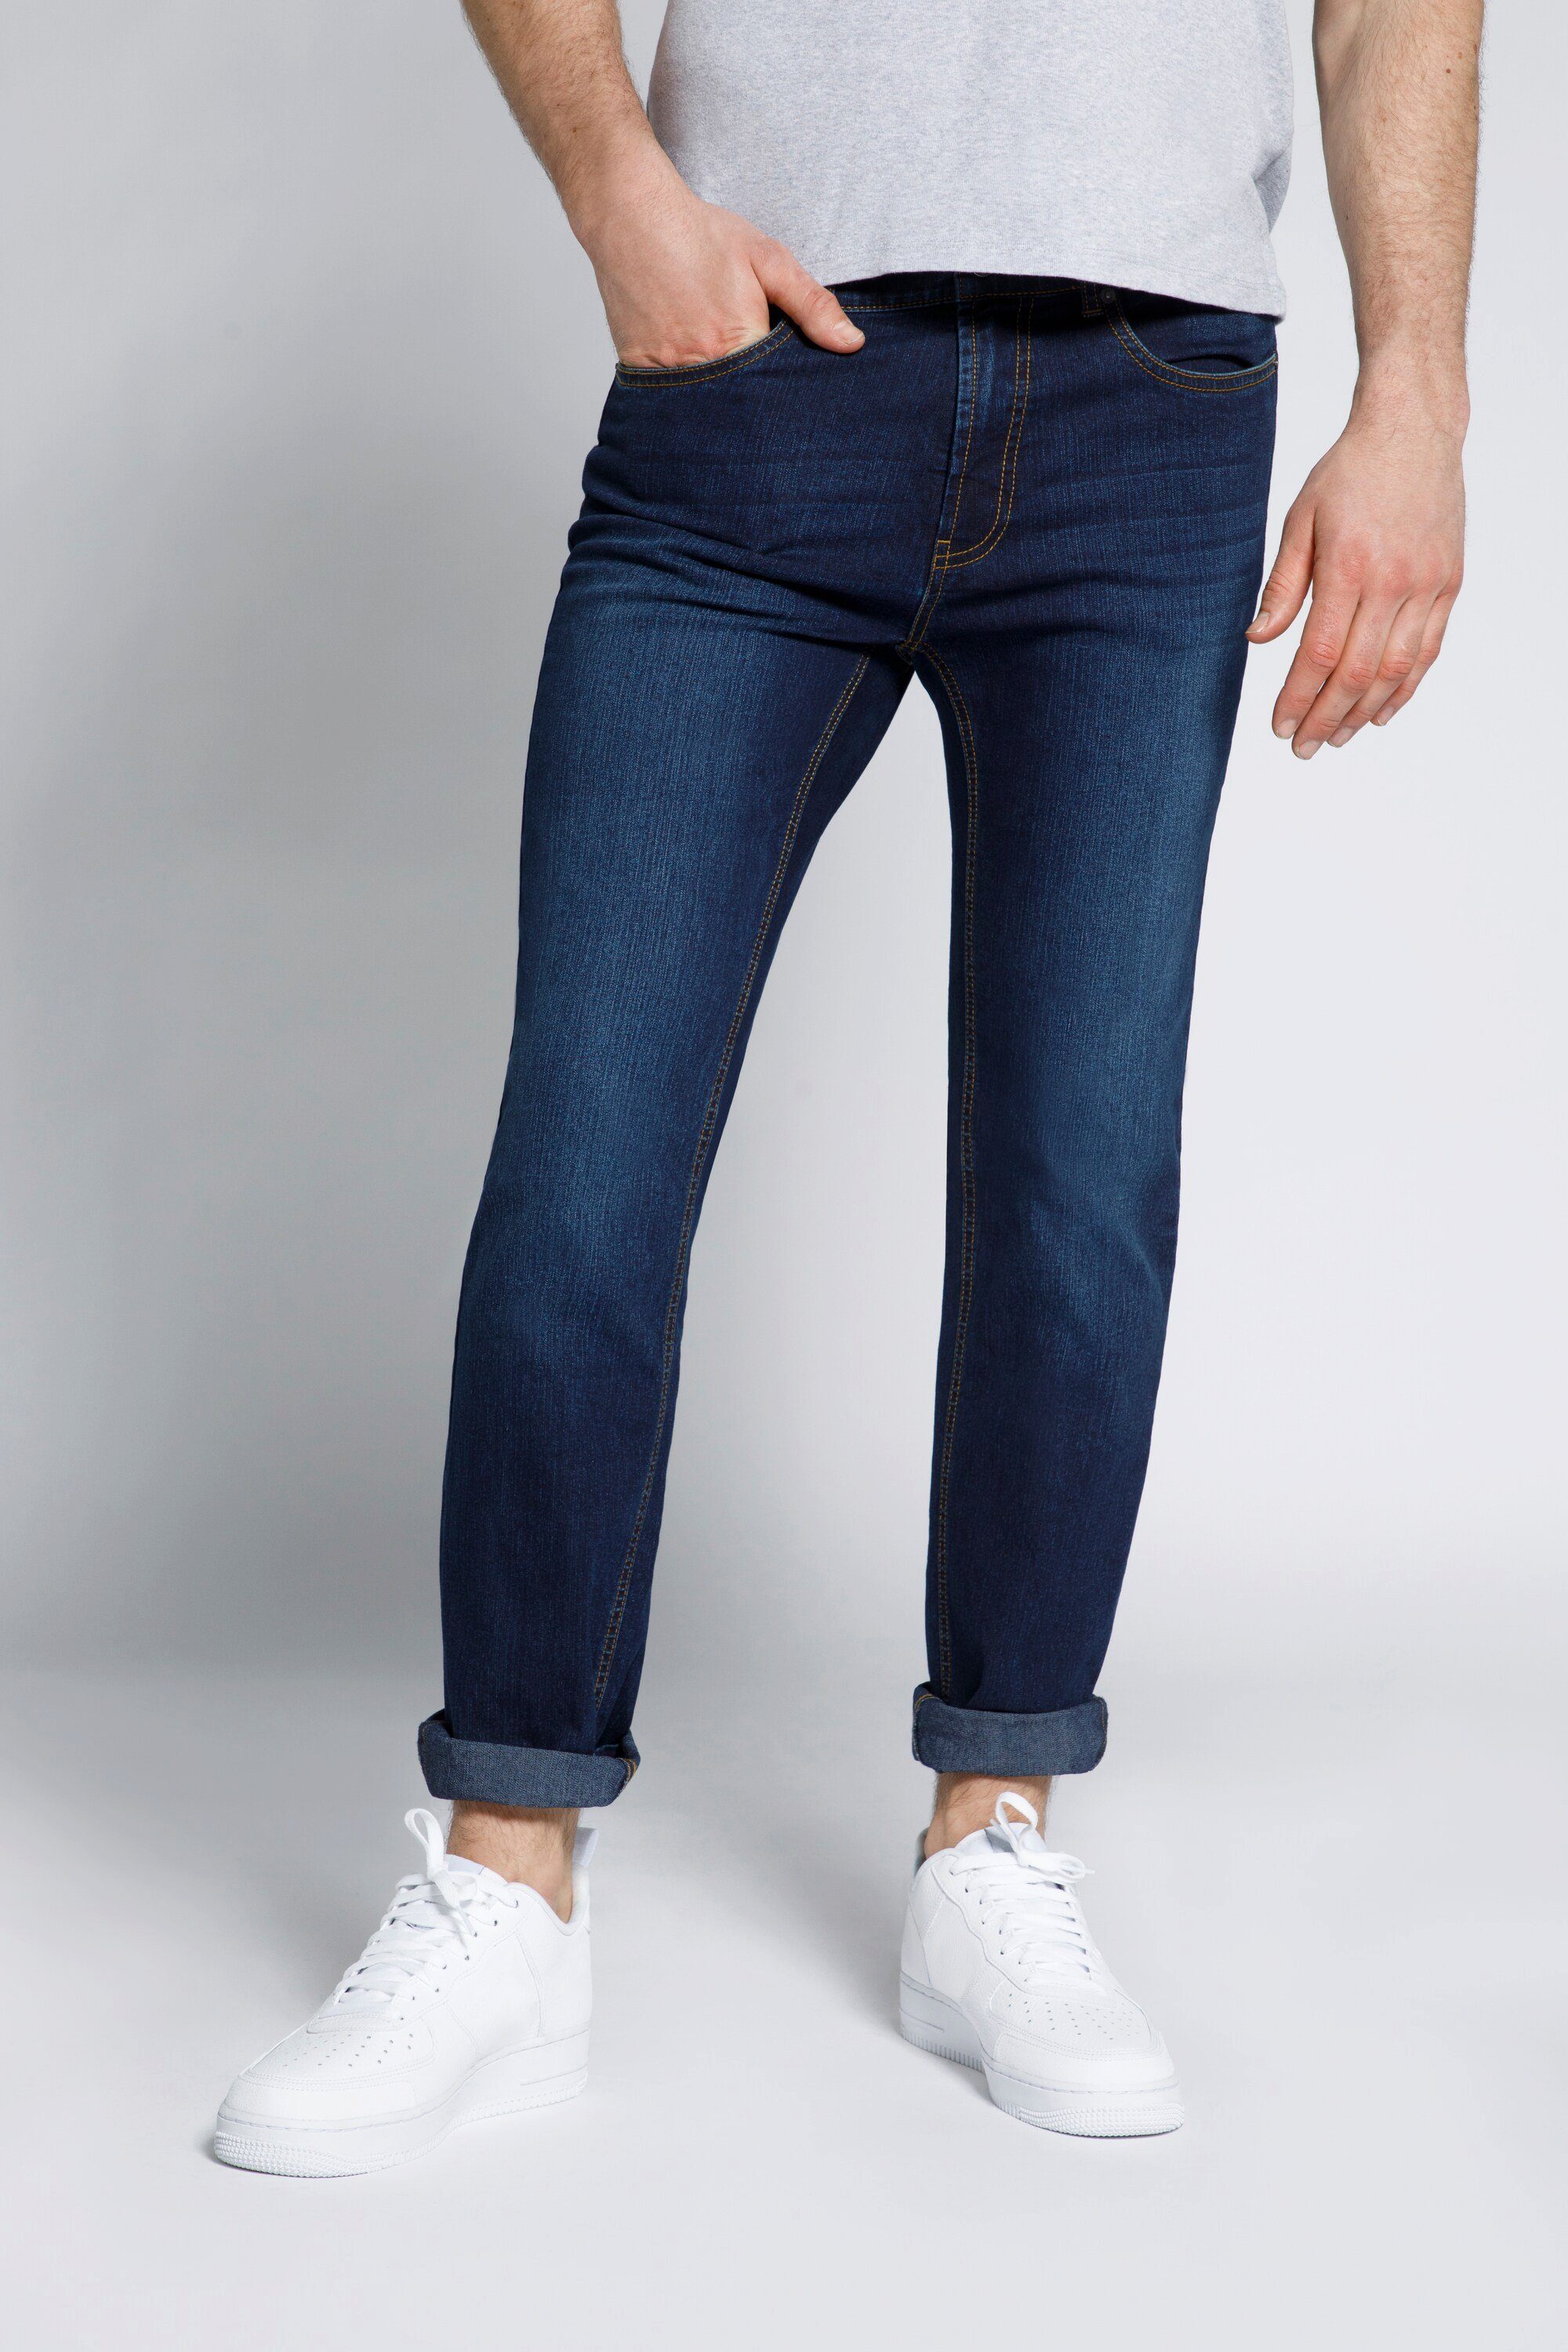 STHUGE 5-Pocket-Jeans STHUGE Herren Jeans Modern Fit dark blue denim | Jeans